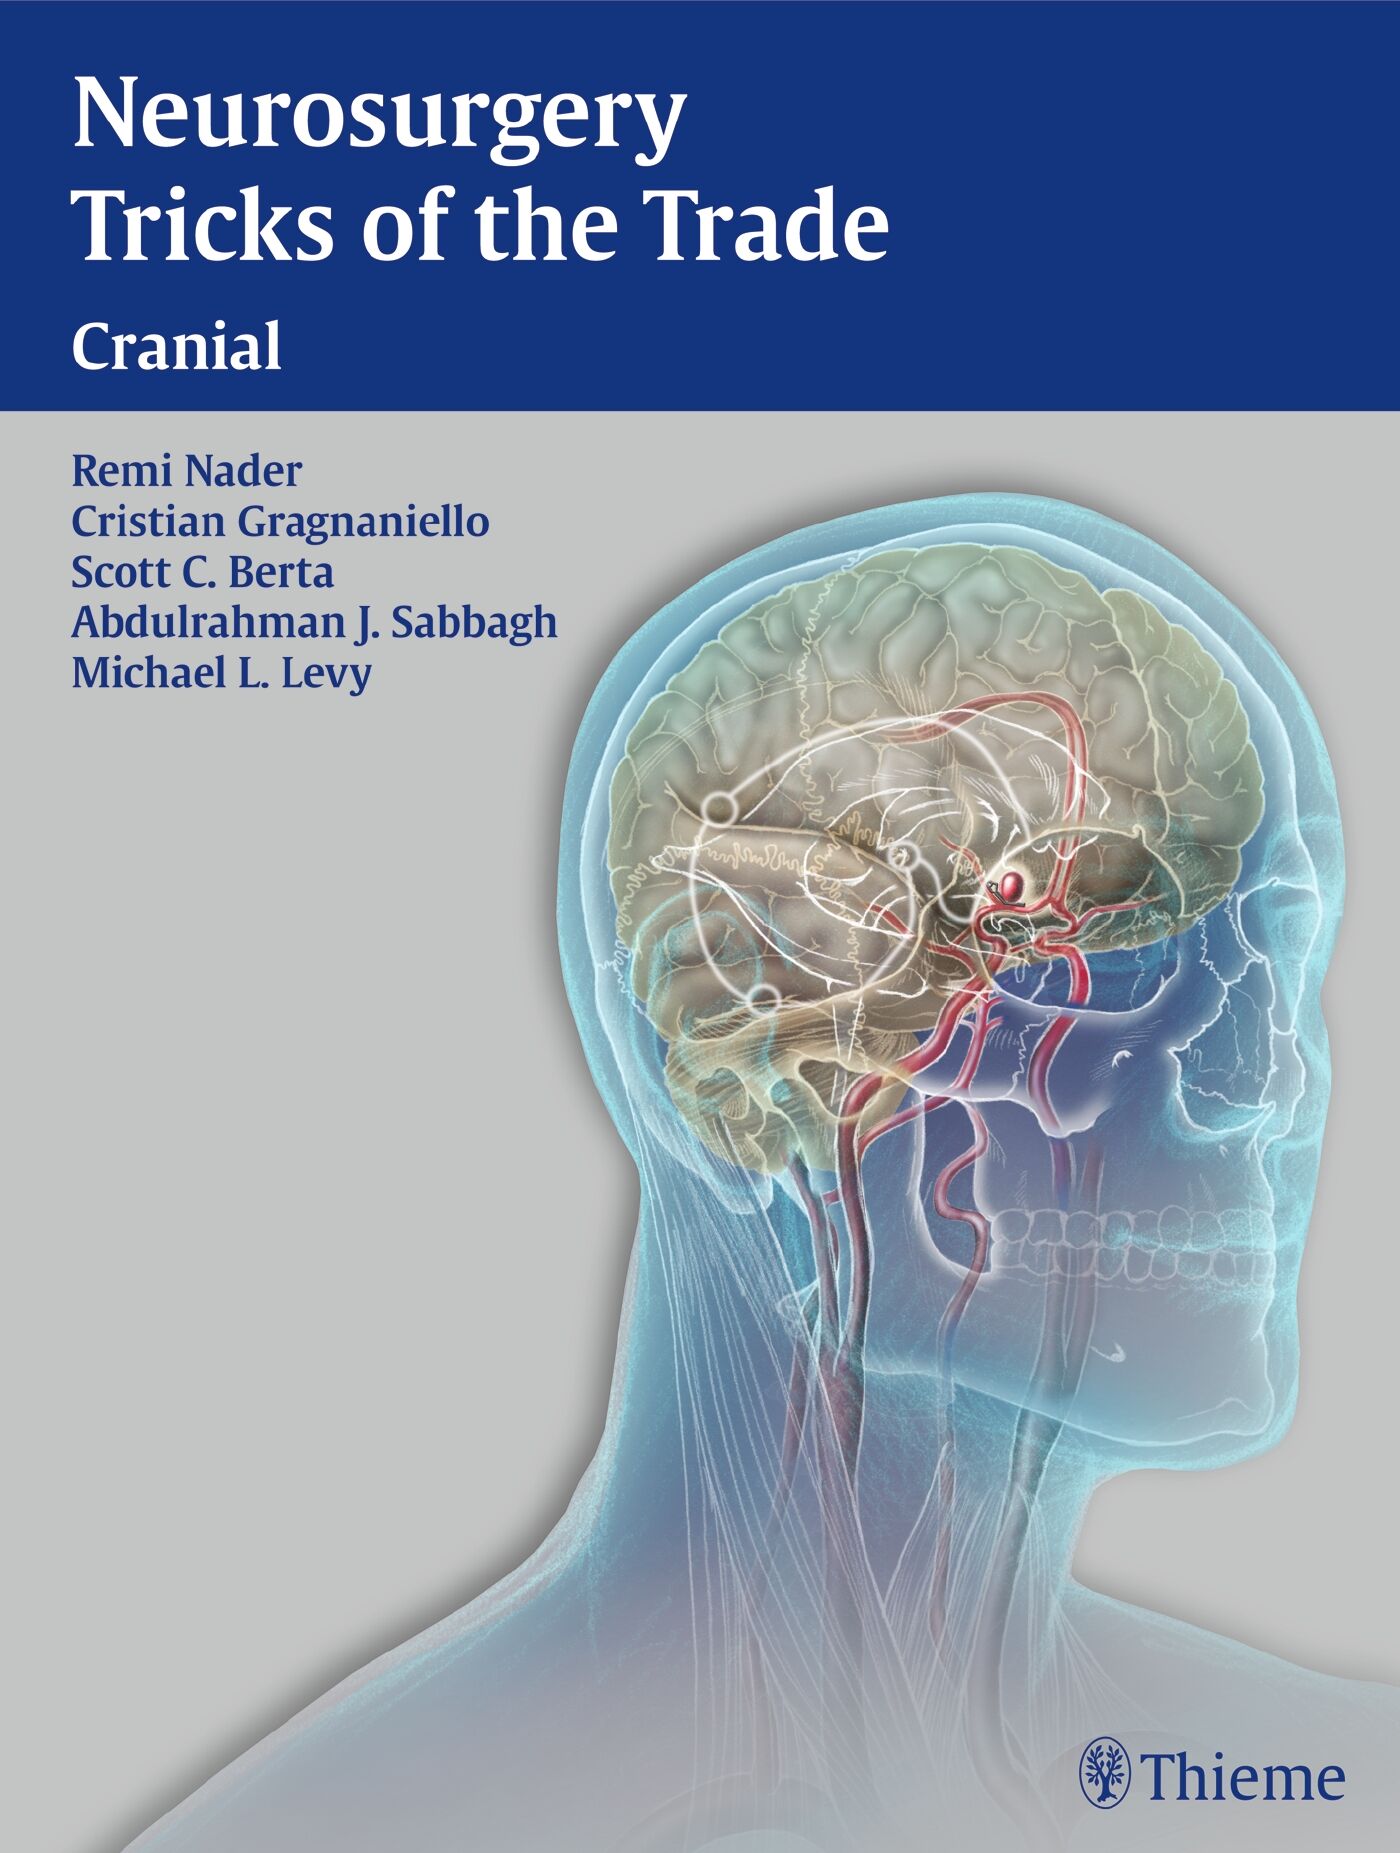 Neurosurgery Tricks of the Trade - Cranial, 9781604063349